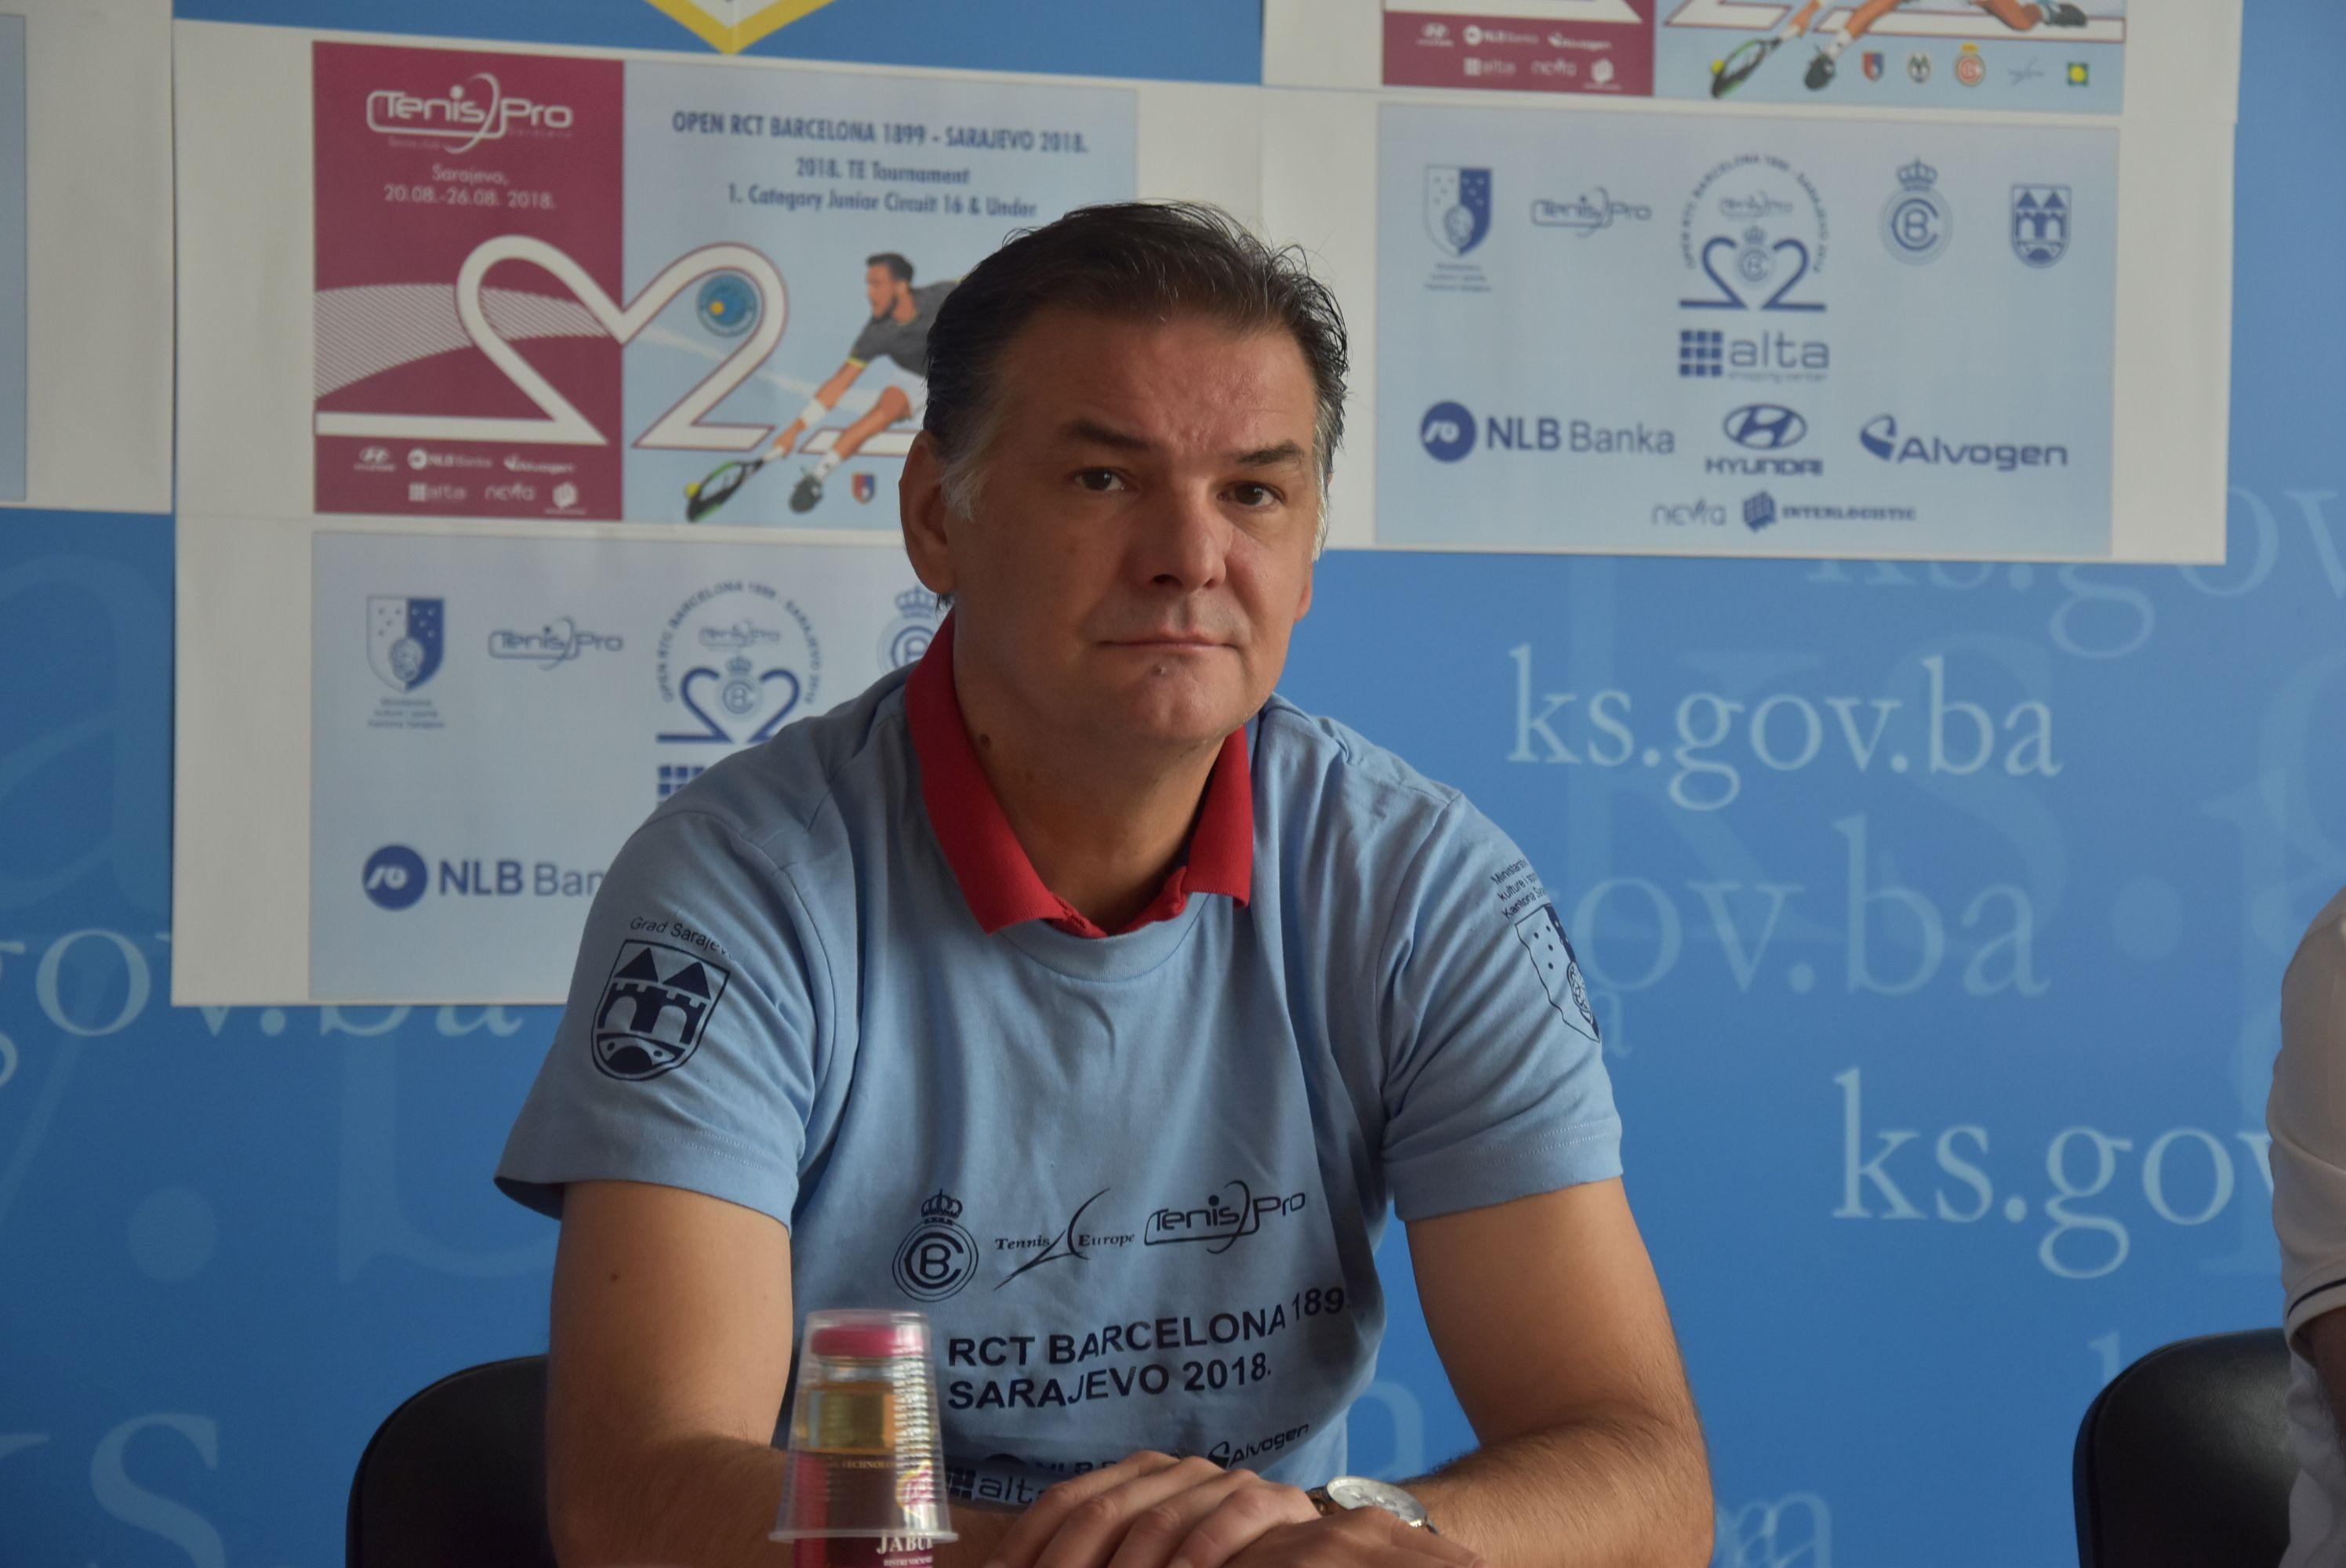 Ministarstvo kulture i sporta KS generalni pokrovitelj teniskog turnira "Open RTC Barcelona 1899 - Sarajevo 2018"